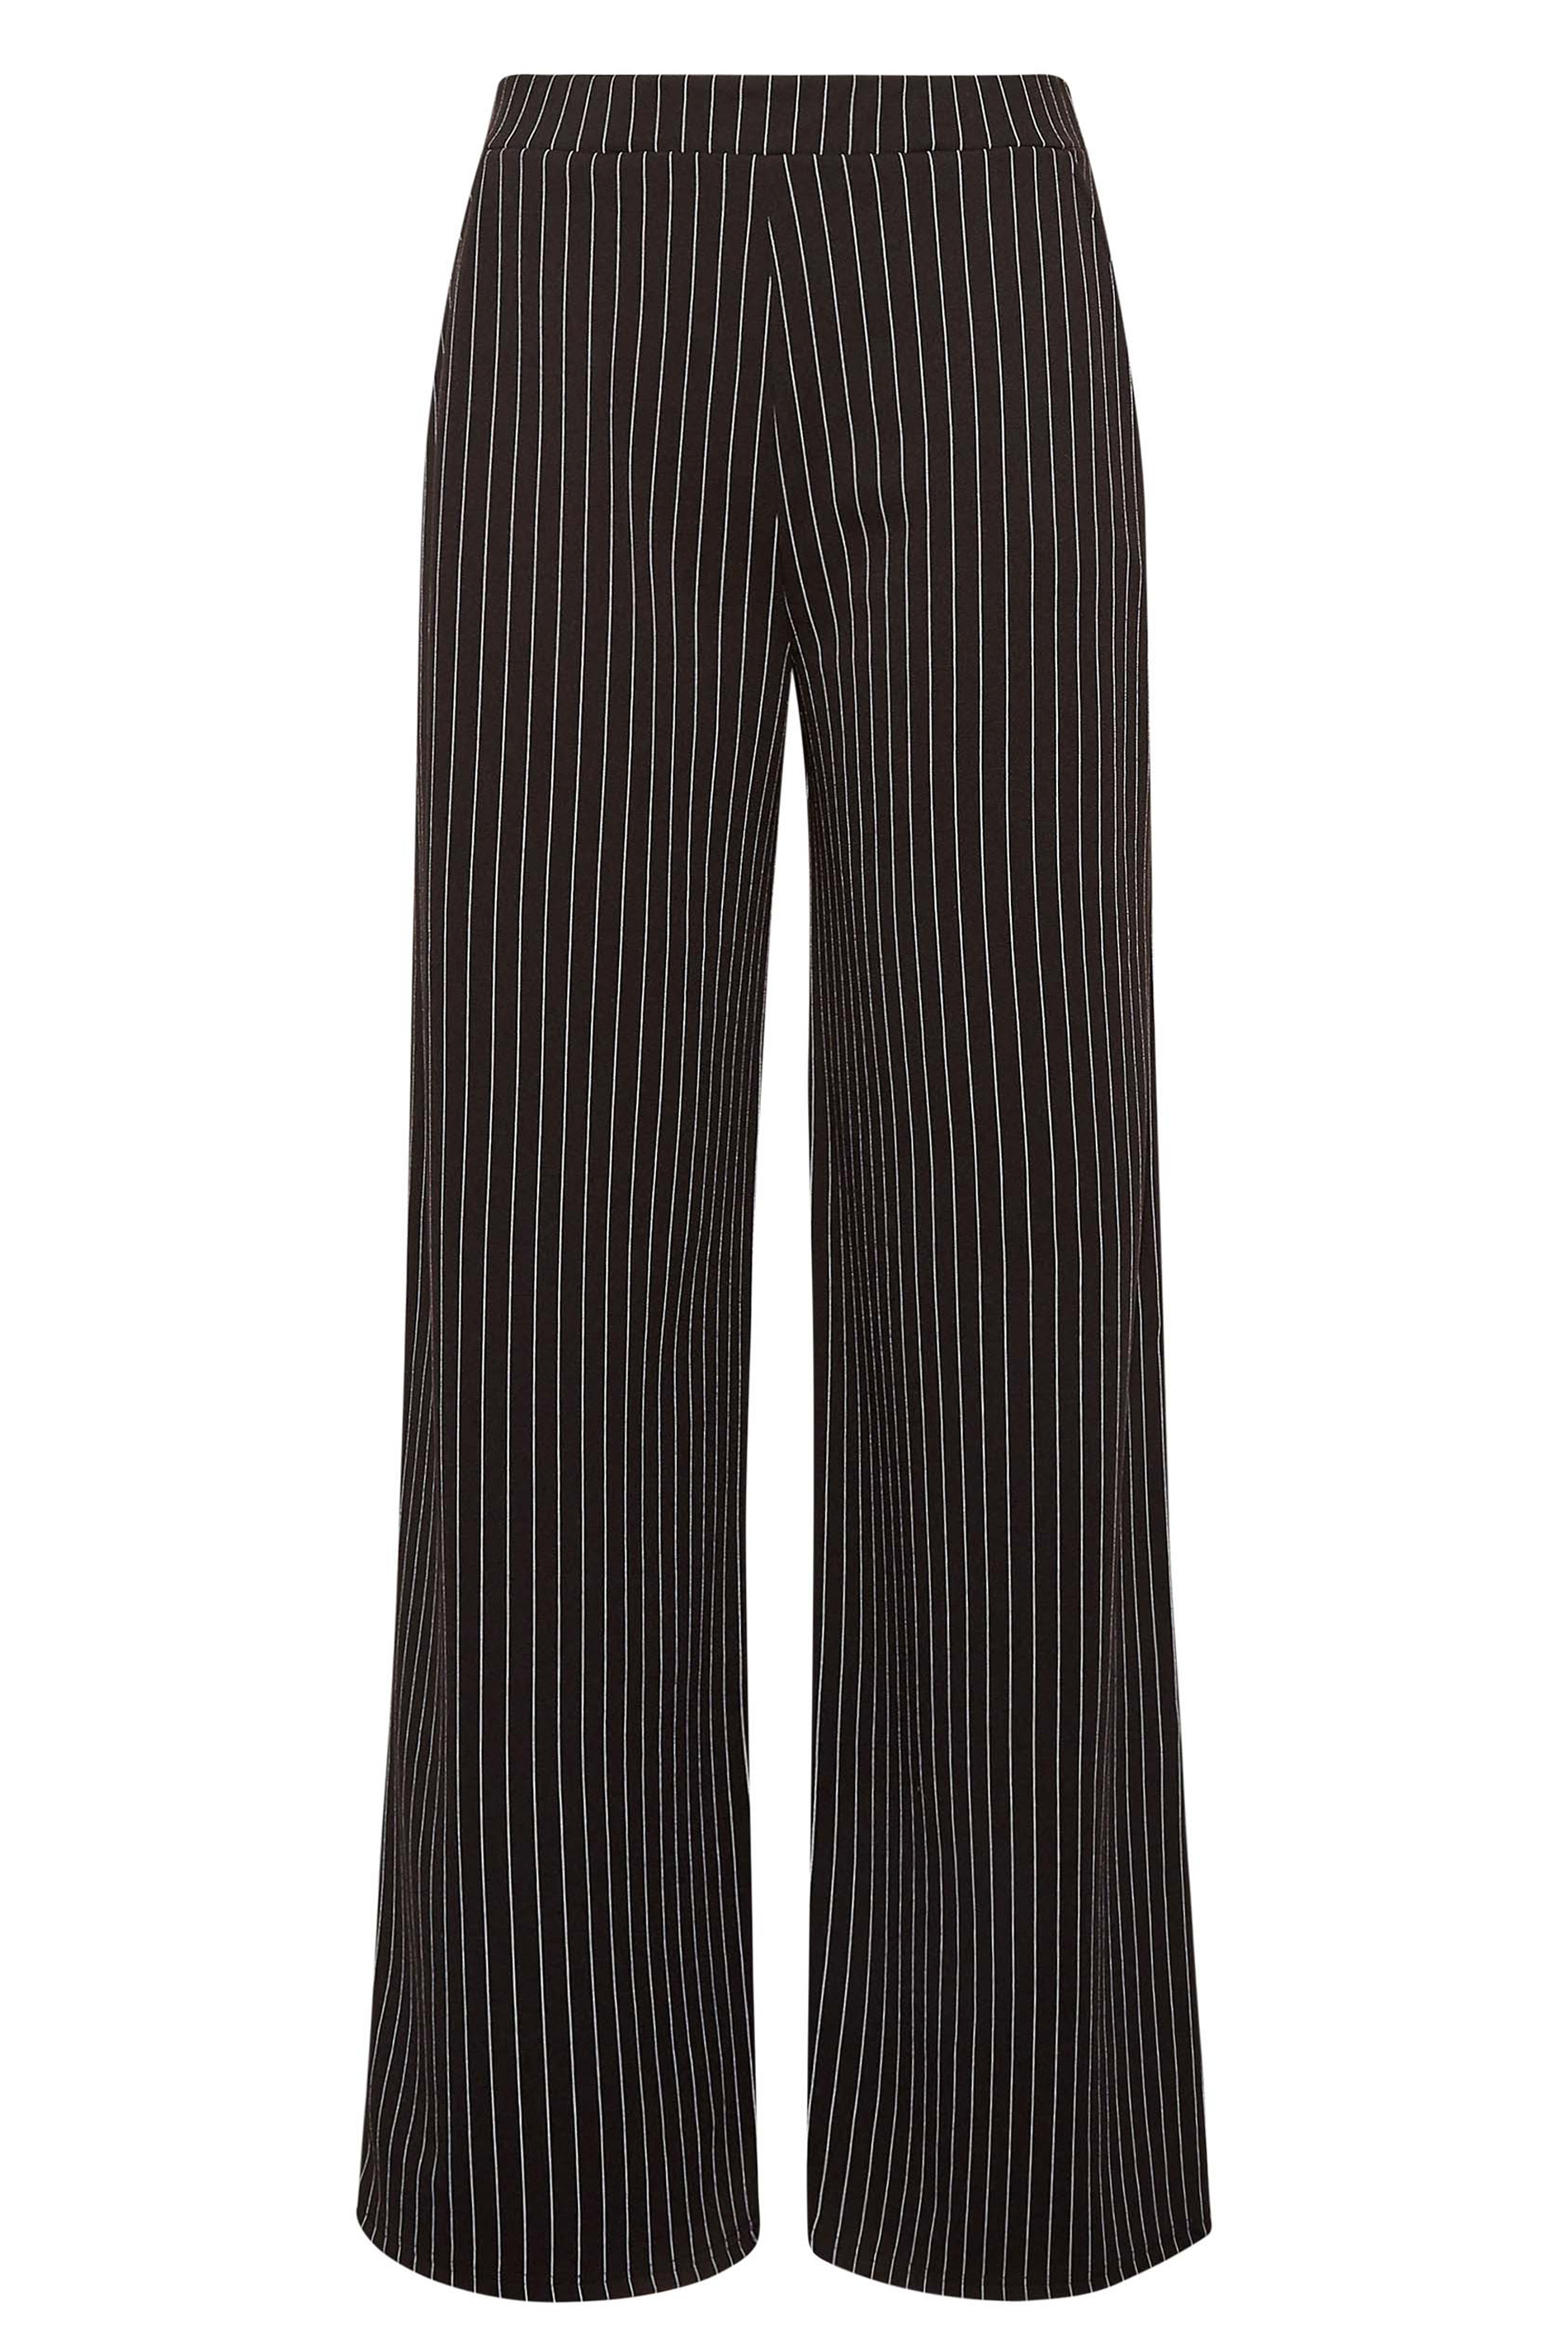 Petite Black Side Stripe Knitted Wide Leg Trousers